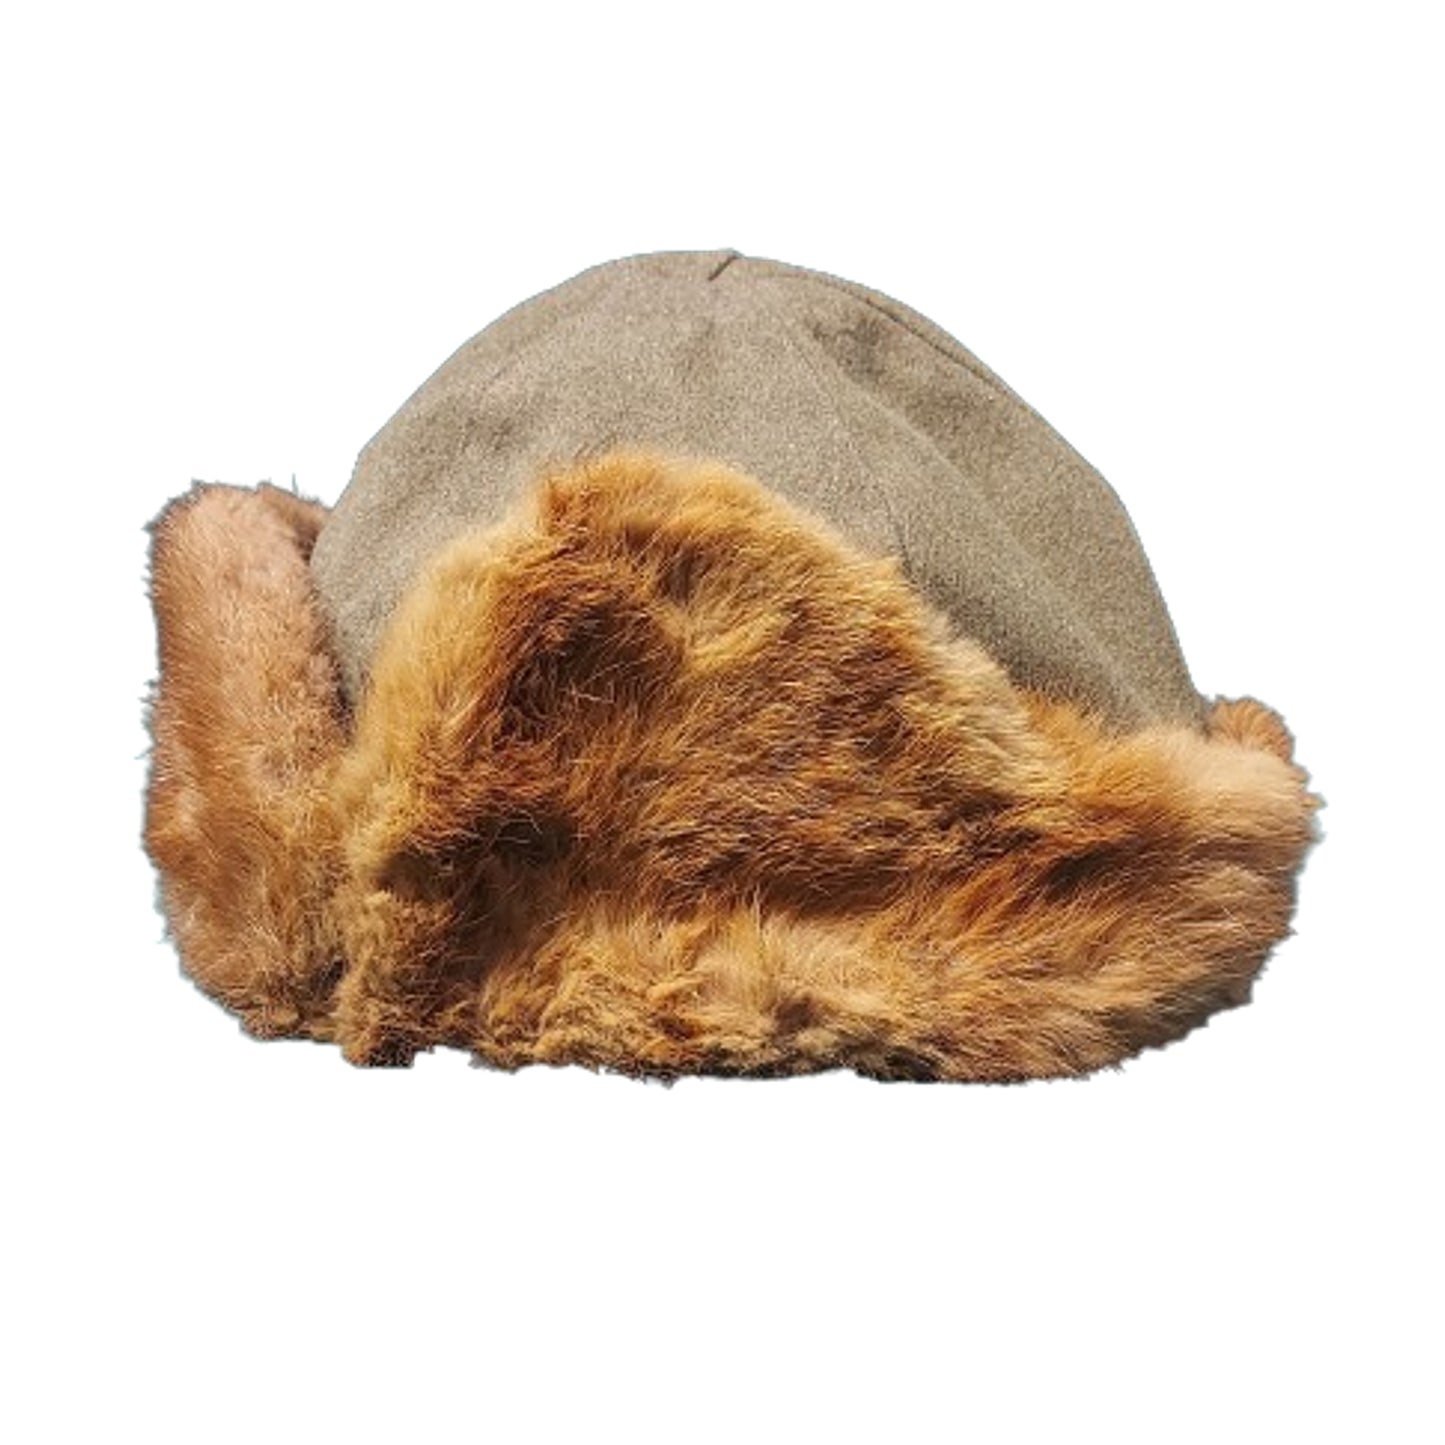 WW2 Canadian Army Winter Brill Fur Cap